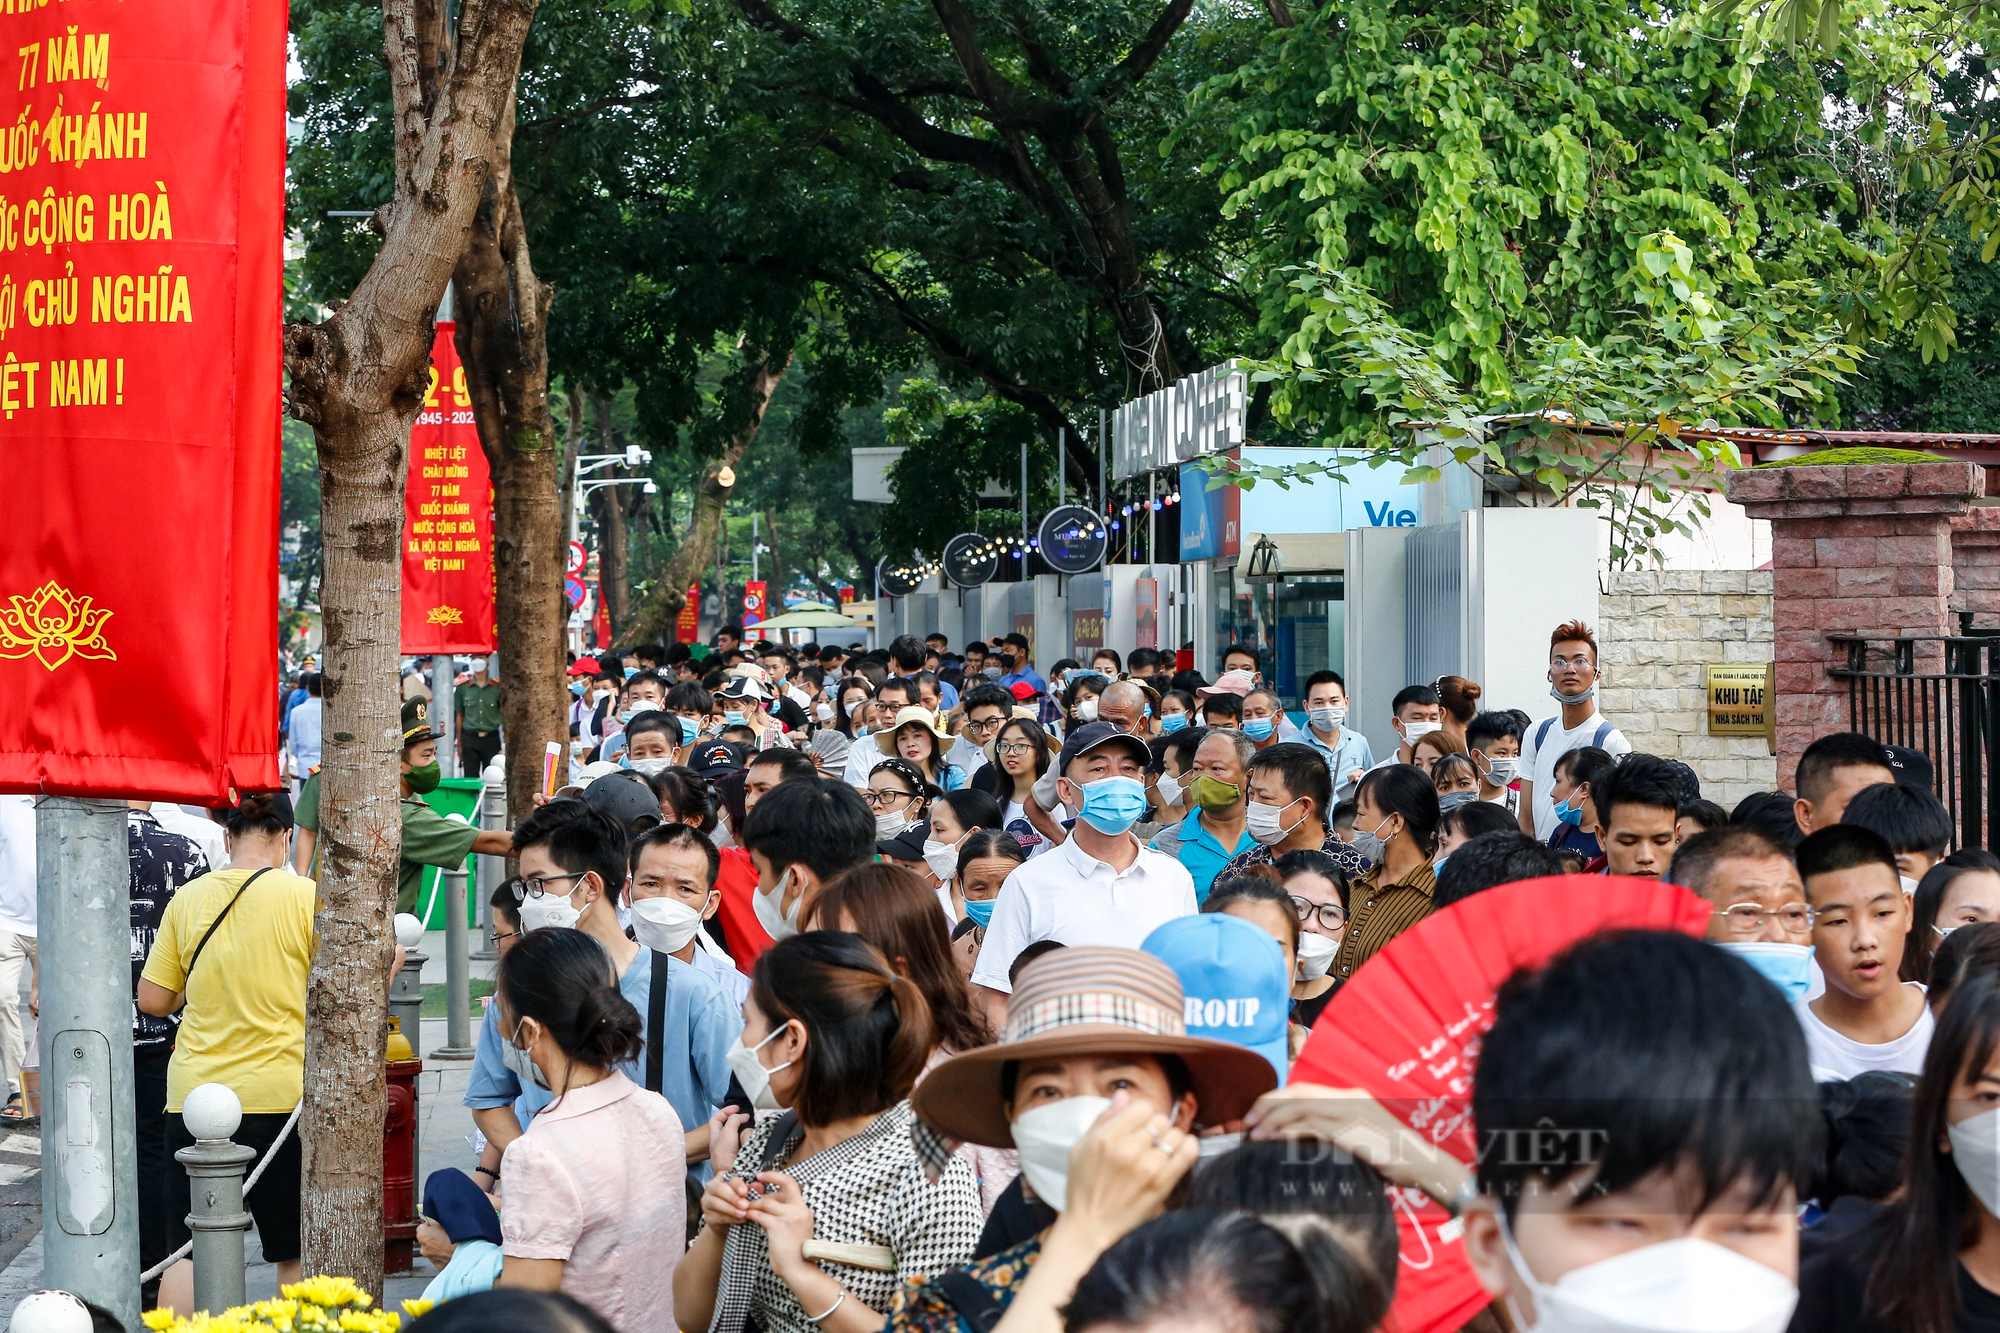 Hàng vạn người xếp hàng dài vào Lăng viếng Chủ tịch Hồ Chí Minh ngày Quốc khánh 2/9 - Ảnh 2.